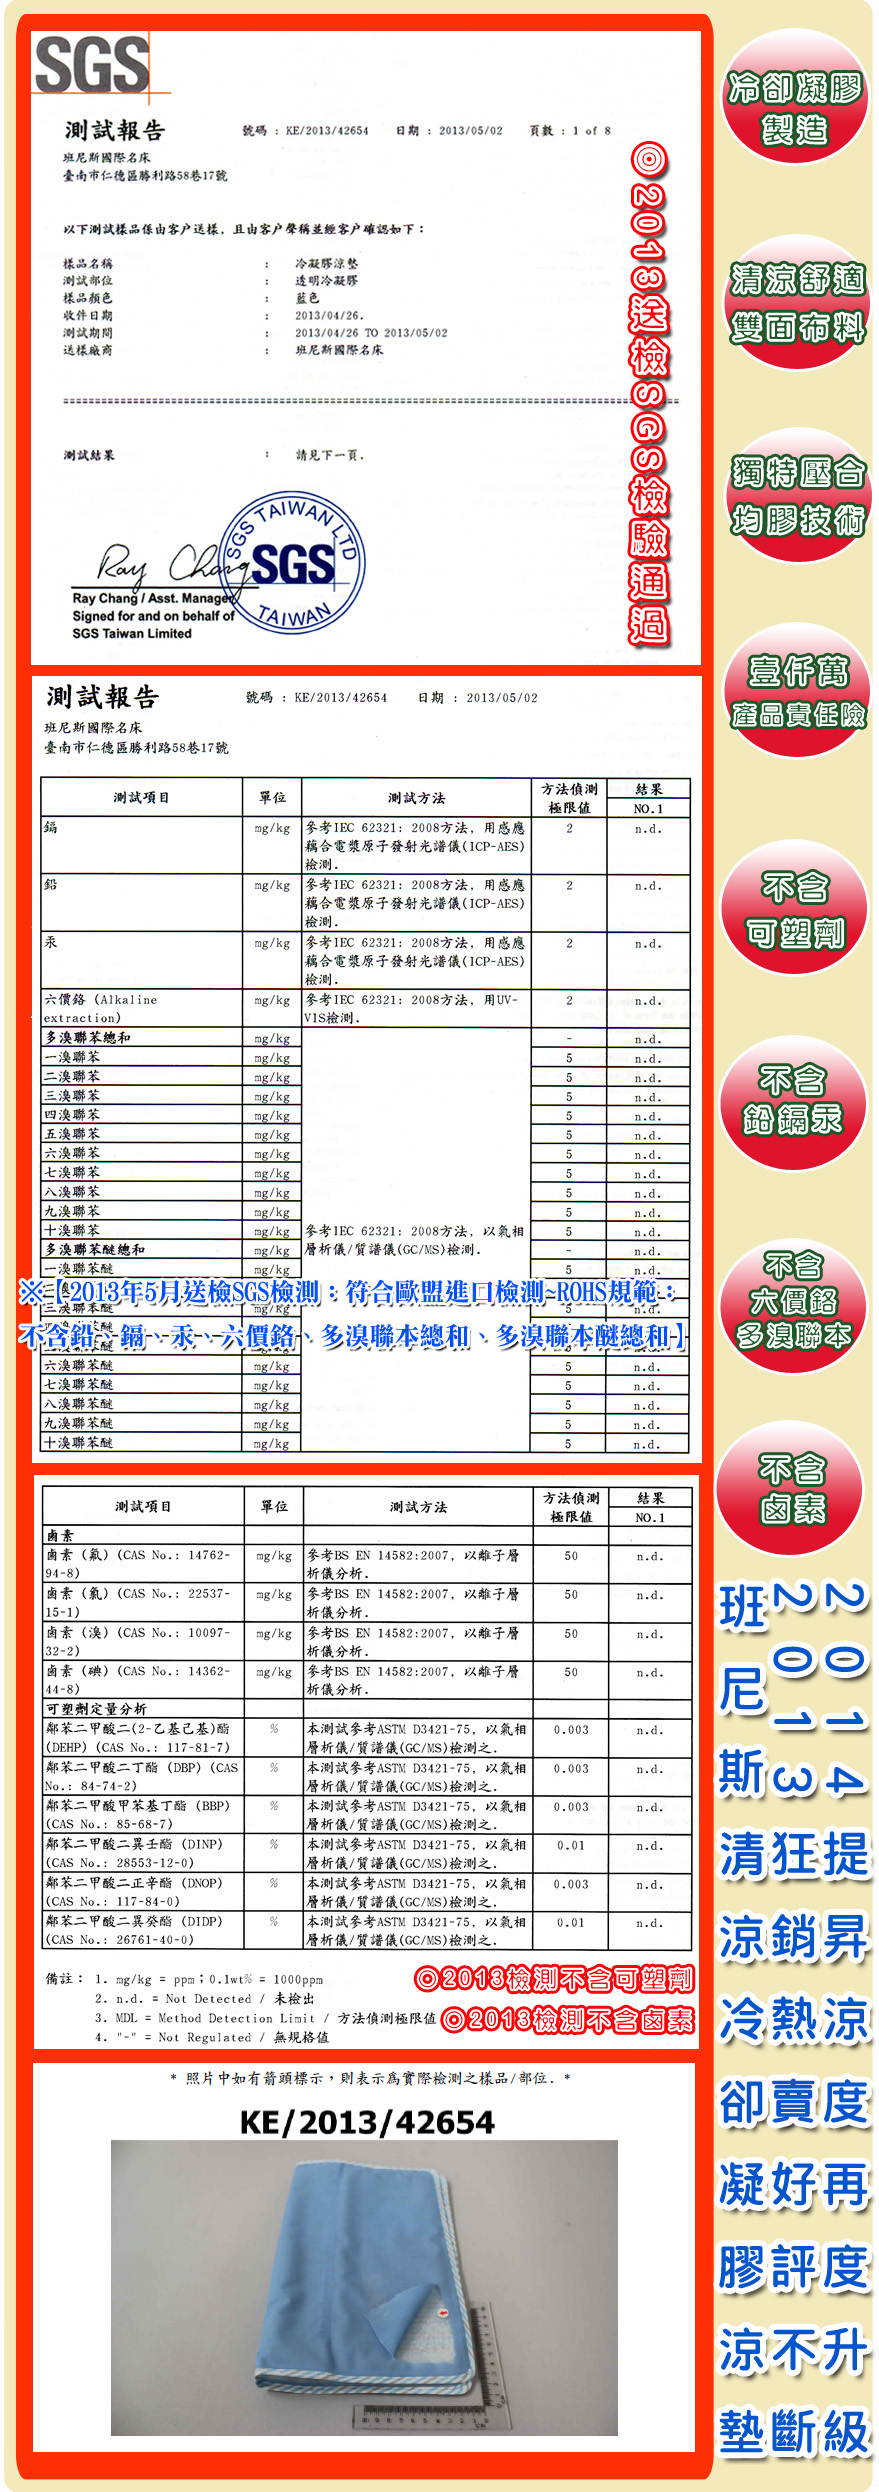 【班尼斯國際名床】~日本熱賣~Ice Cool降溫涼感凝膠床墊(70*140加重)!冰墊/涼墊!取代涼蓆!